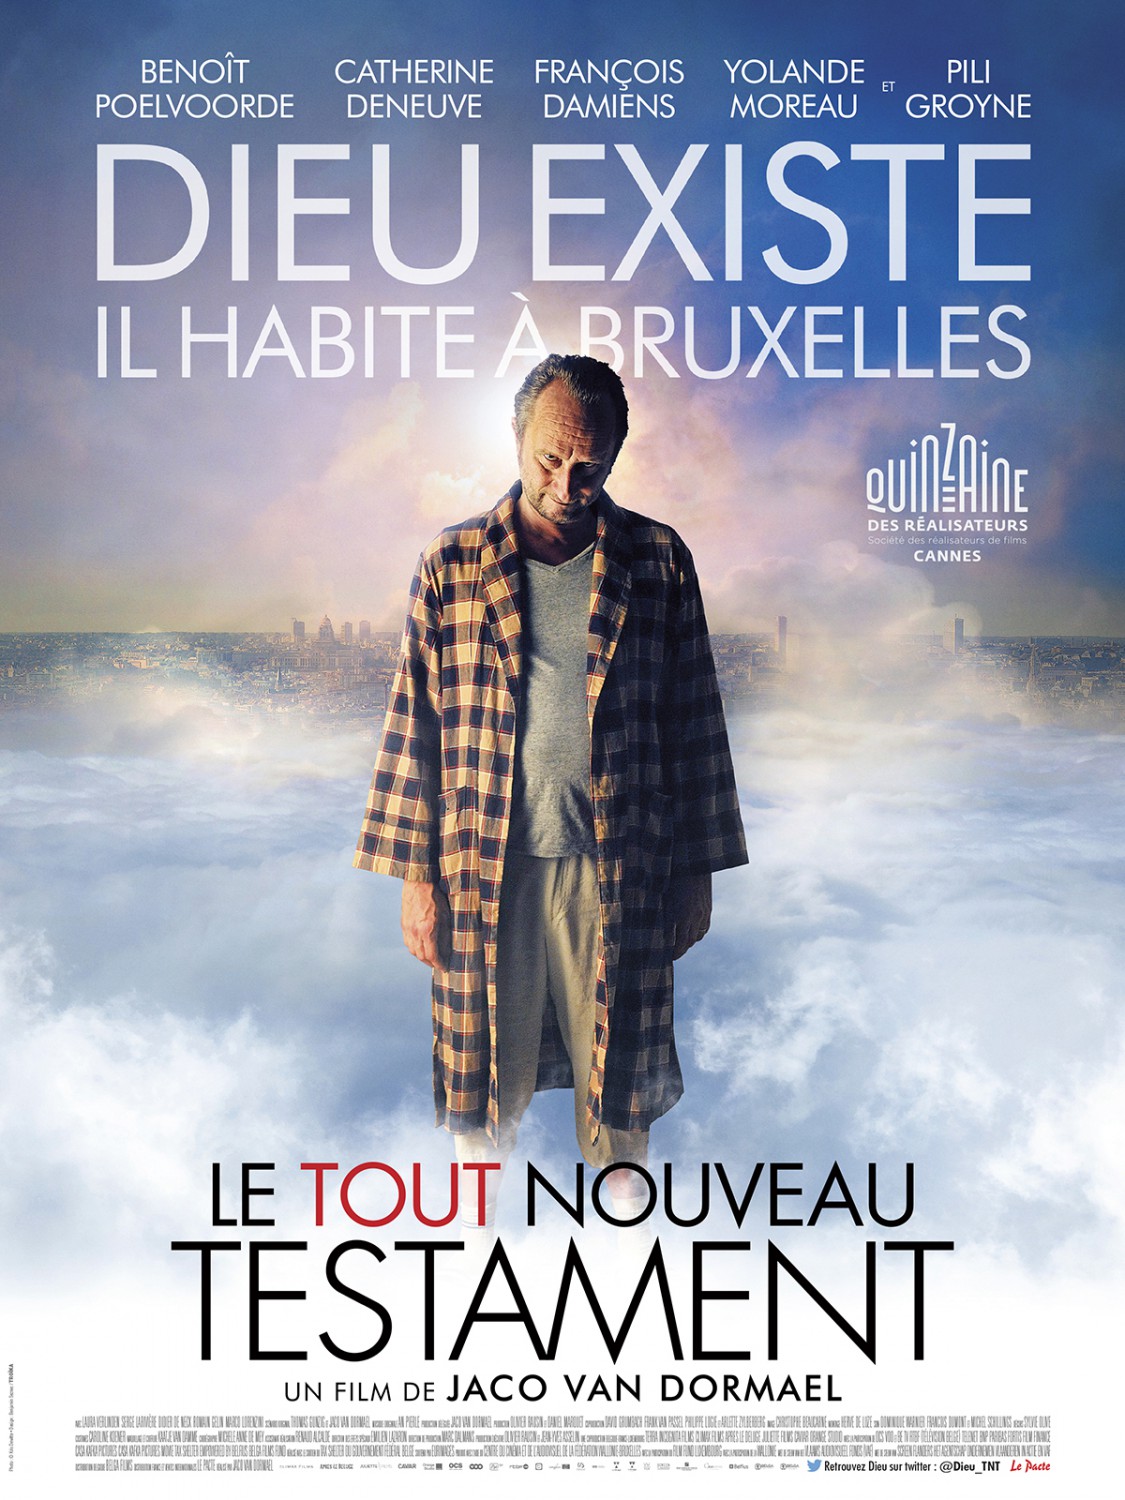 Extra Large Movie Poster Image for Le tout nouveau testament